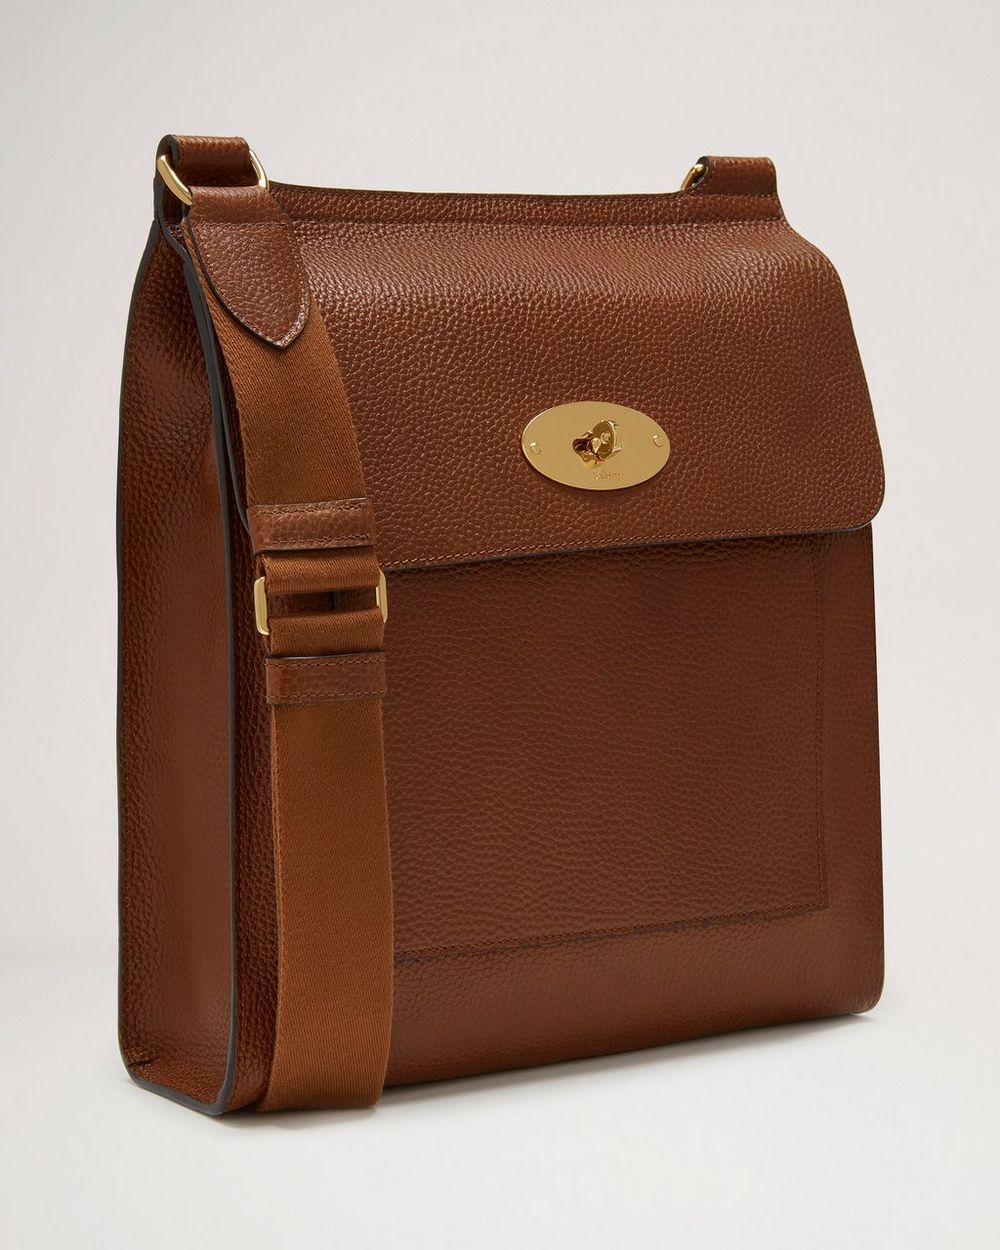 Shoulder-bag (Antony Messenger bag) from Mulberry